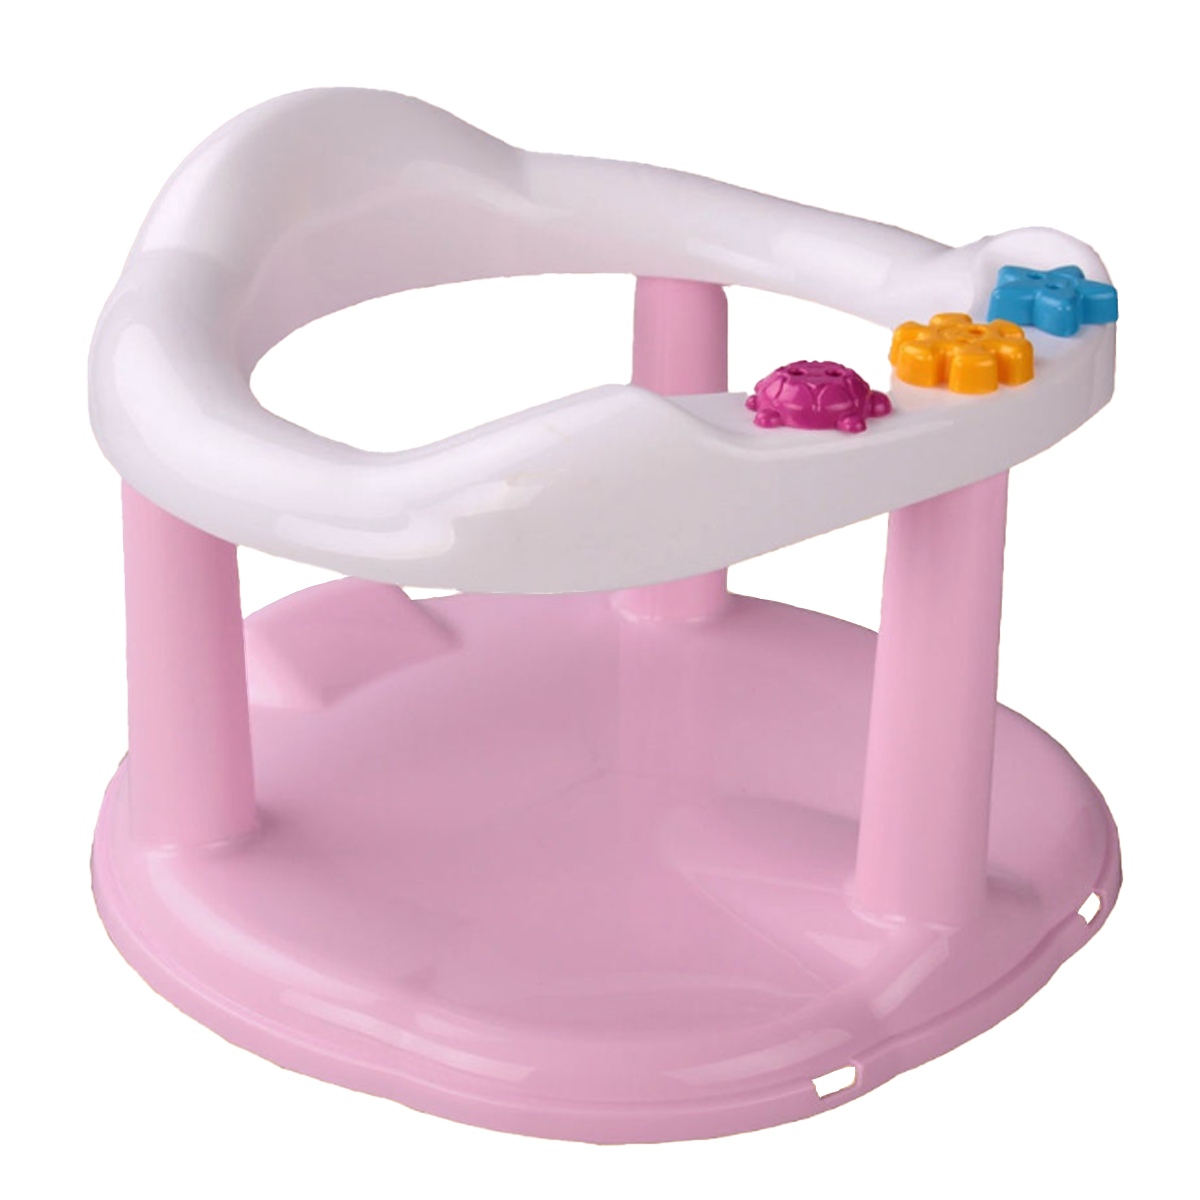 Сиденье в ванну на присосках детское М6069 розовая